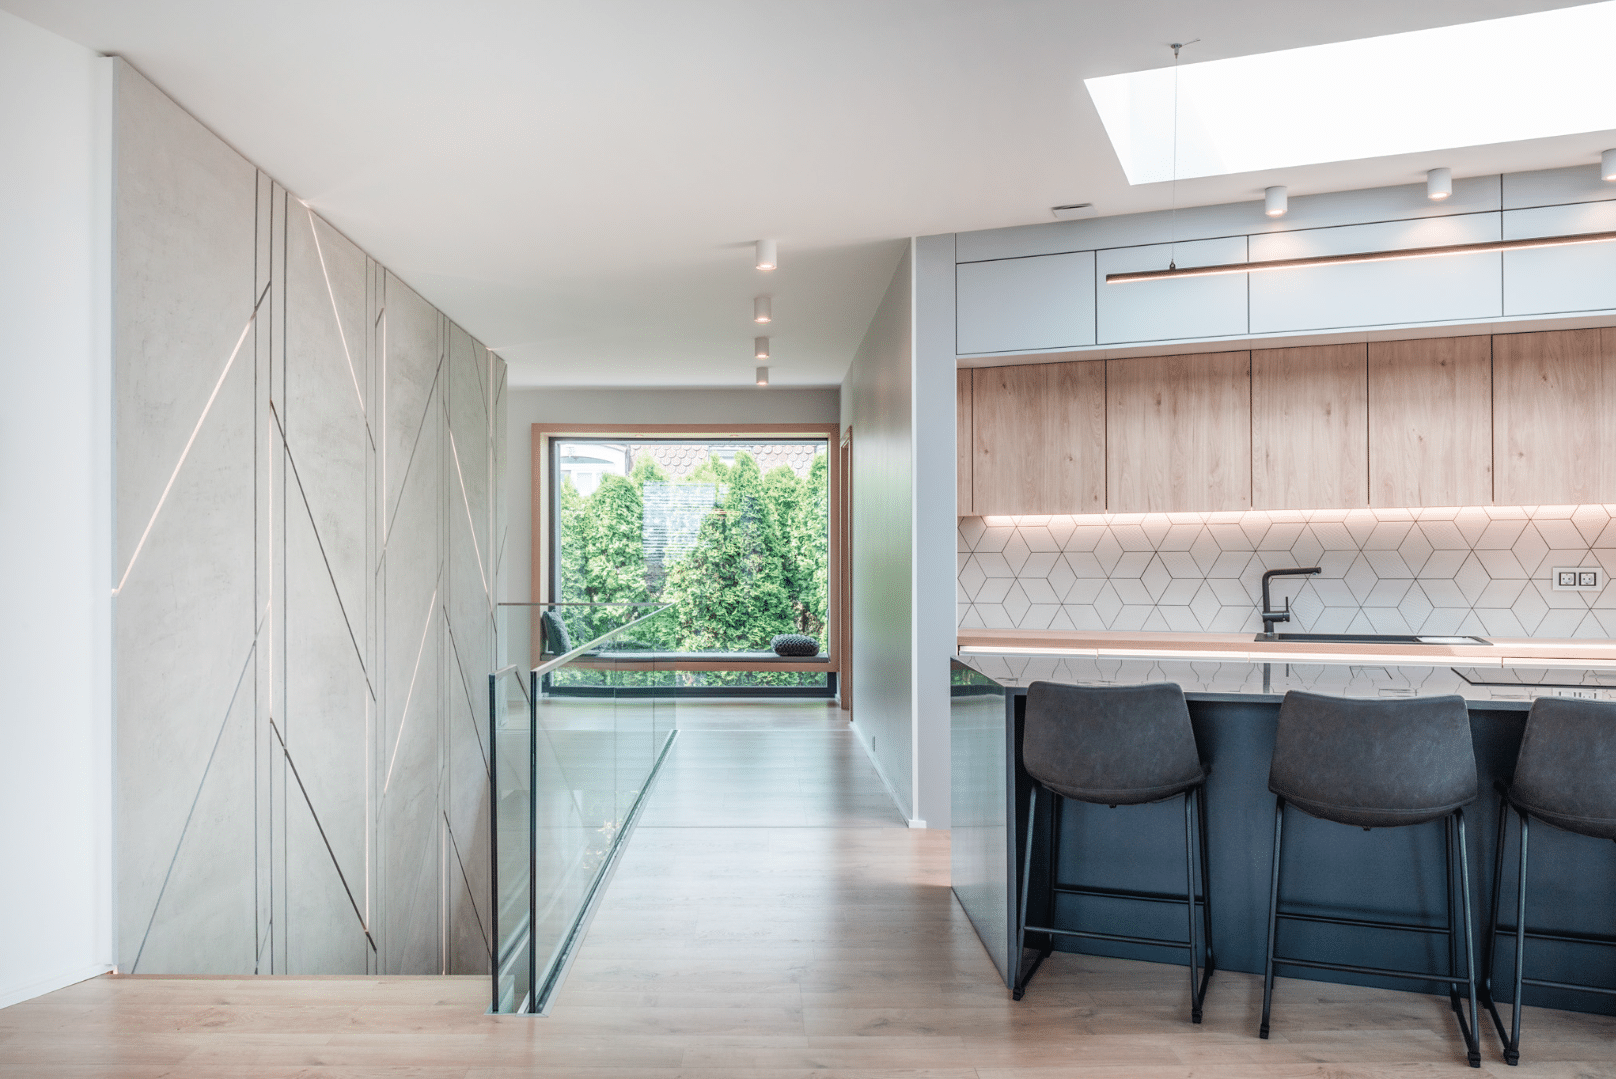 Internorm zeigt eine offene Küche neben einem Treppenabgang mit langem Flur zu einem großen Fenster mit Sitzgelegenheit.